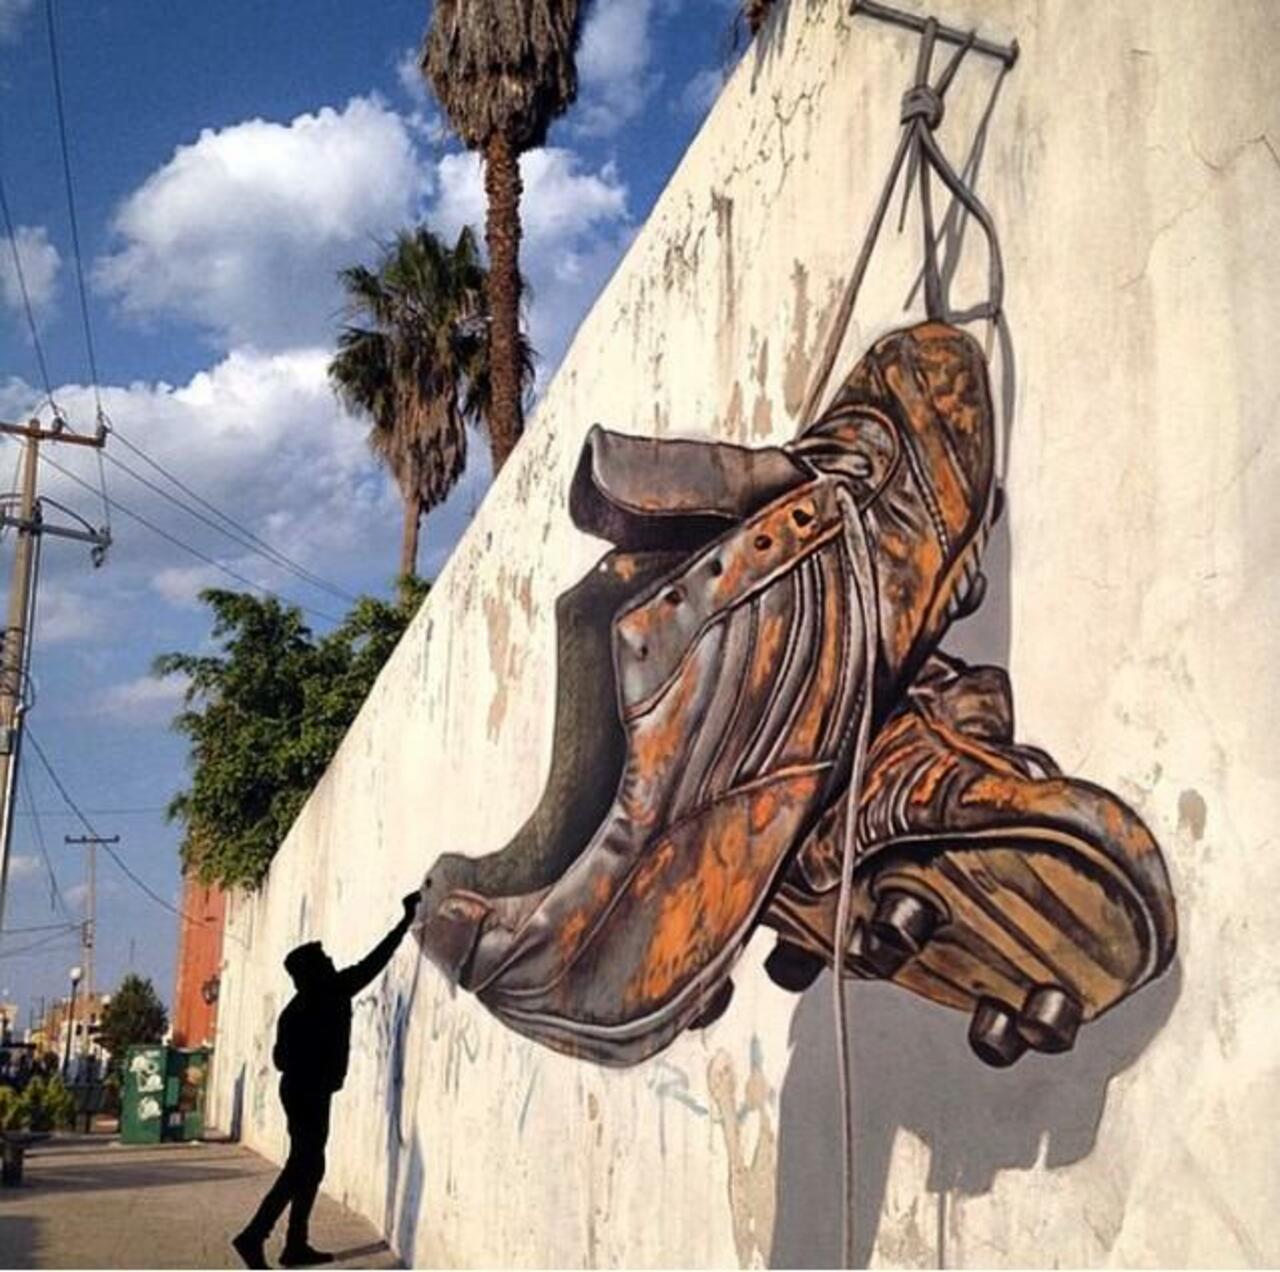 RT GoogleStreetArt "Awesome anamorphic 3D Street Art by Juandres Vera 

#art #graffiti #mural #streetart http://t.co/s5ZGH91KCv"